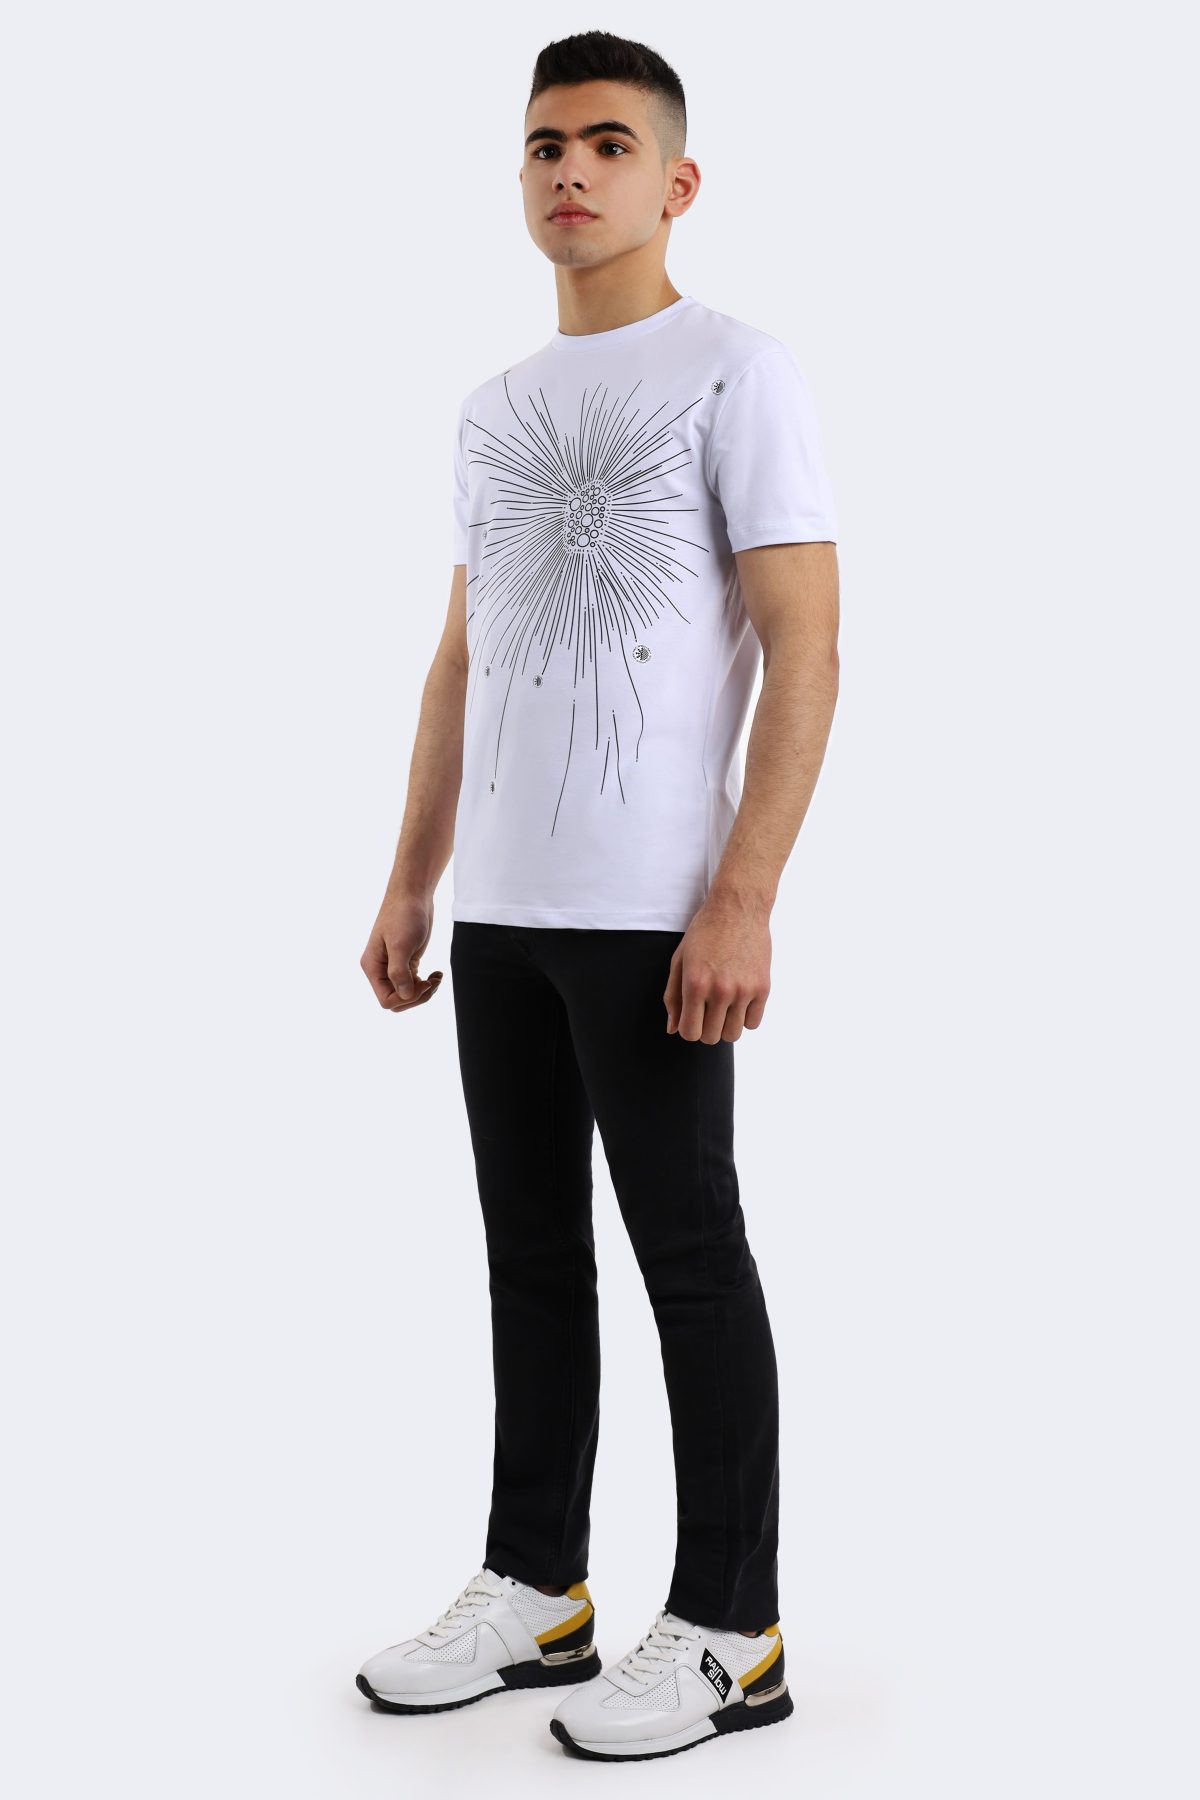 Rainsnow men t-shirt – White-Anthracite-1417